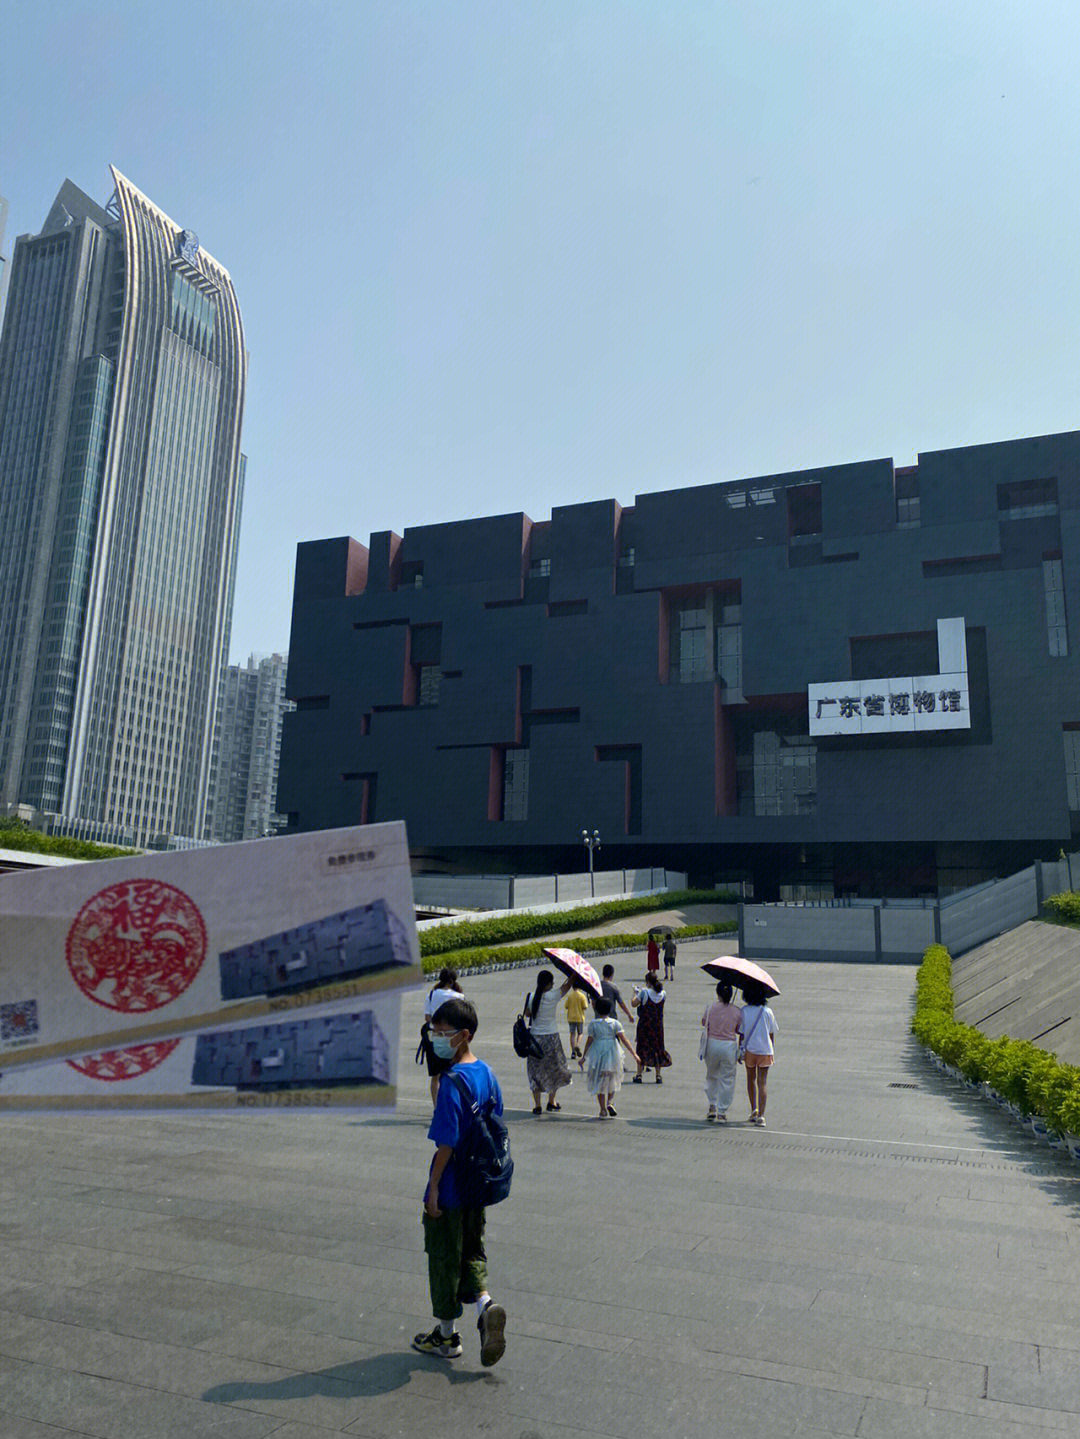 广东省博物馆俯视图图片